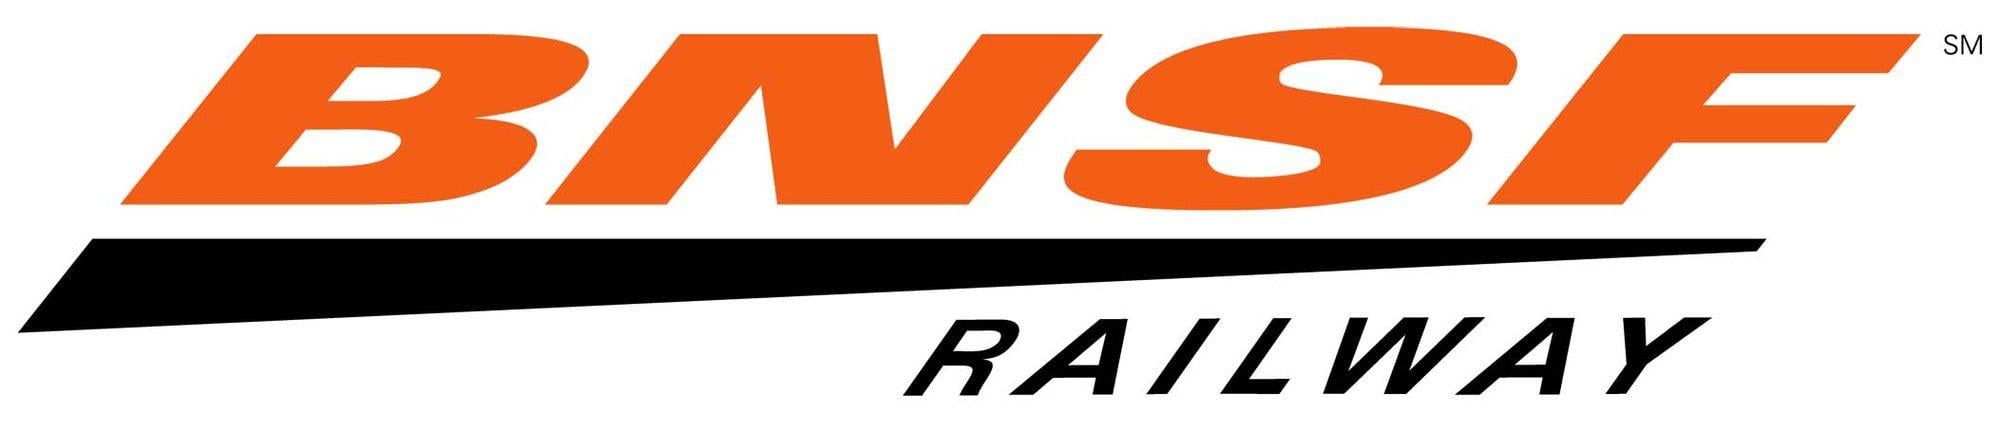 ATSF Logo - BNSF Railway | Locomotive Wiki | FANDOM powered by Wikia